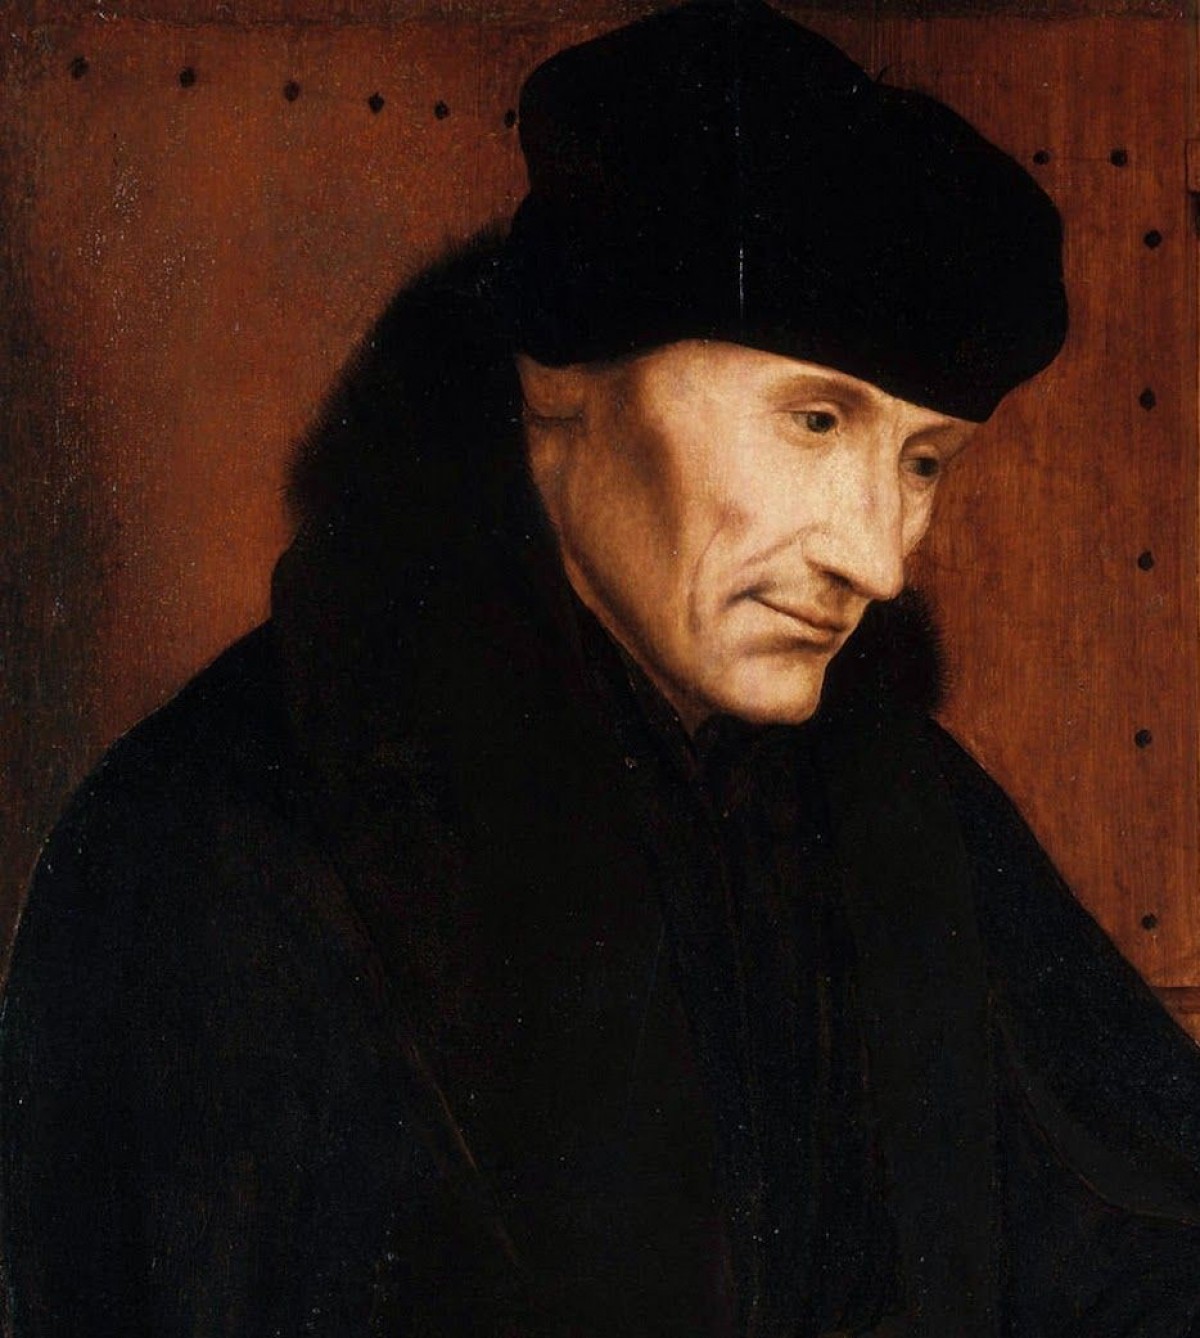 Erasmus kimdir? Desiderius Erasmus kimdir?